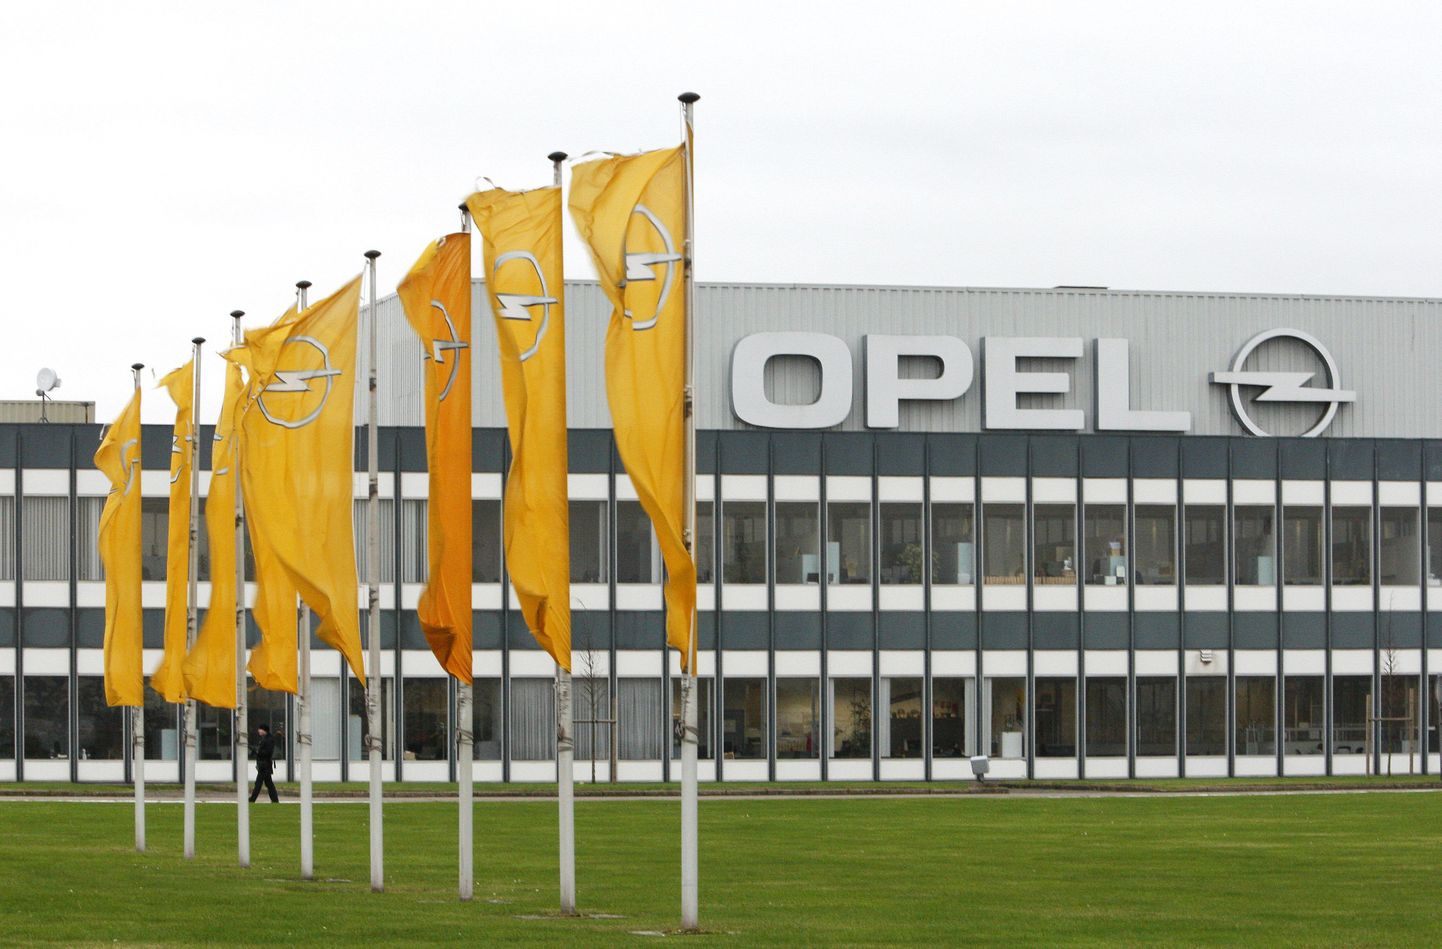 Opeli tehas Antwerpenis Belgias